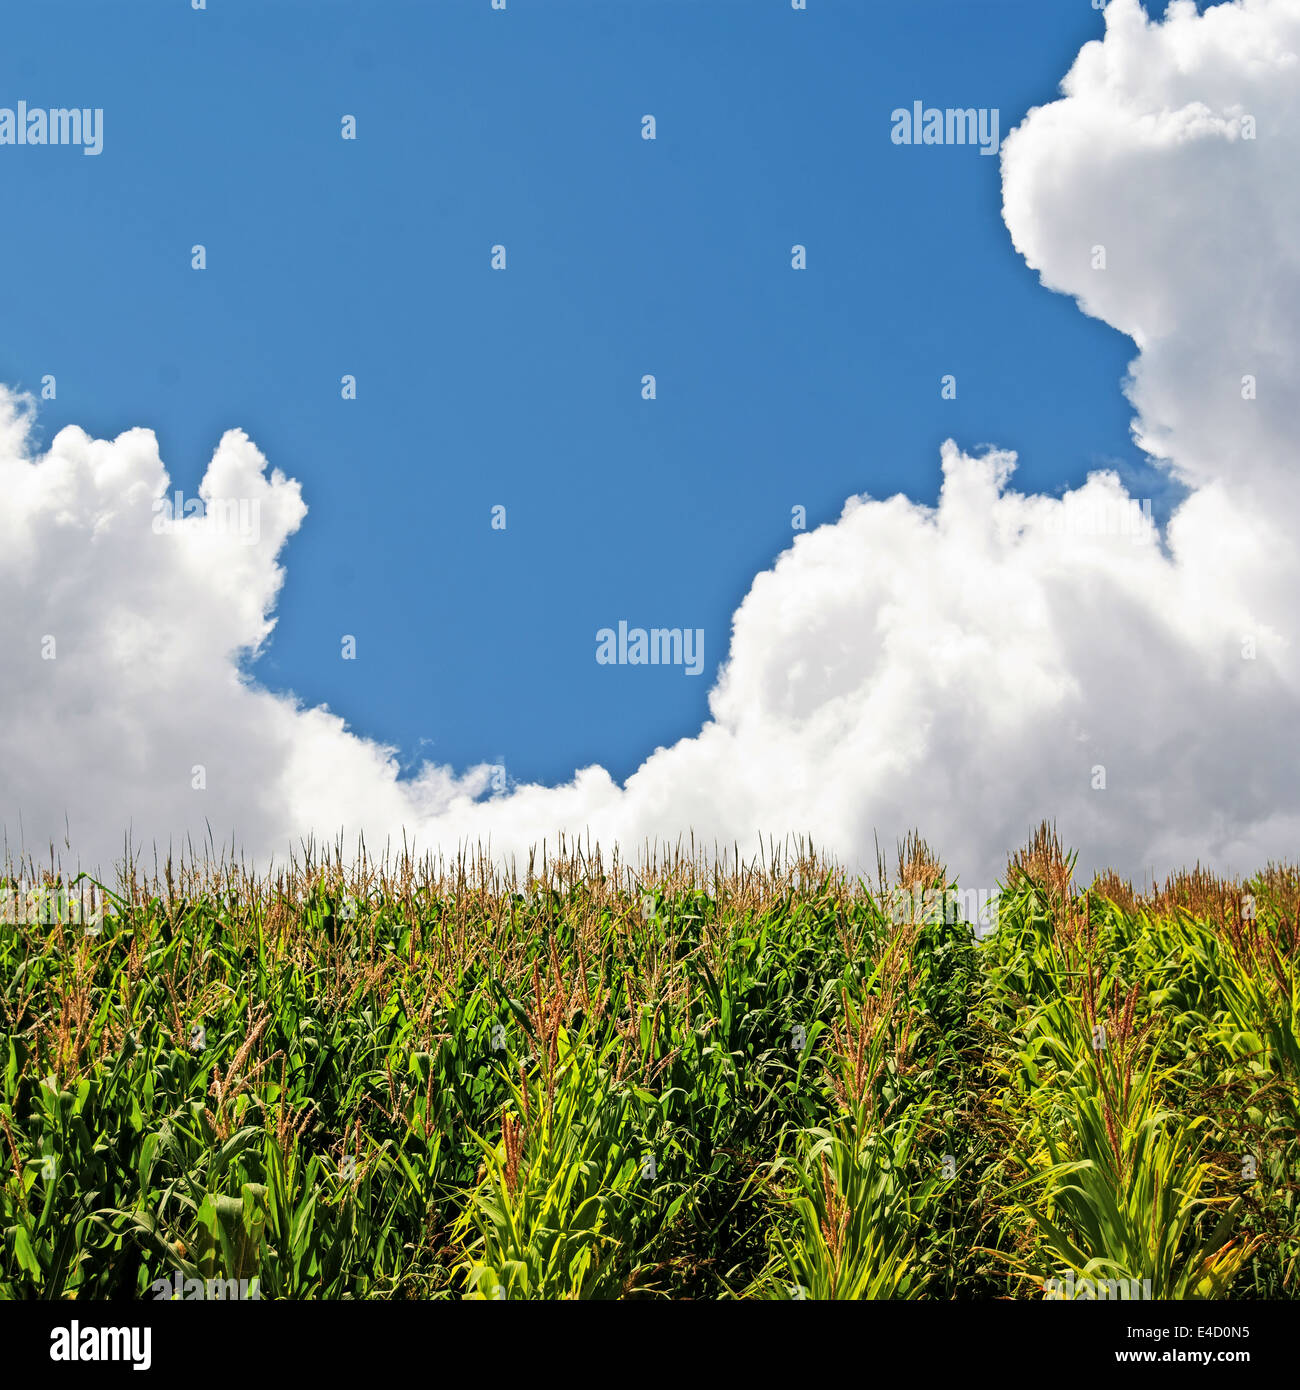 Acercándose a las nubes de lluvia tras una cosecha de maíz de verano en un día soleado. Foto de stock